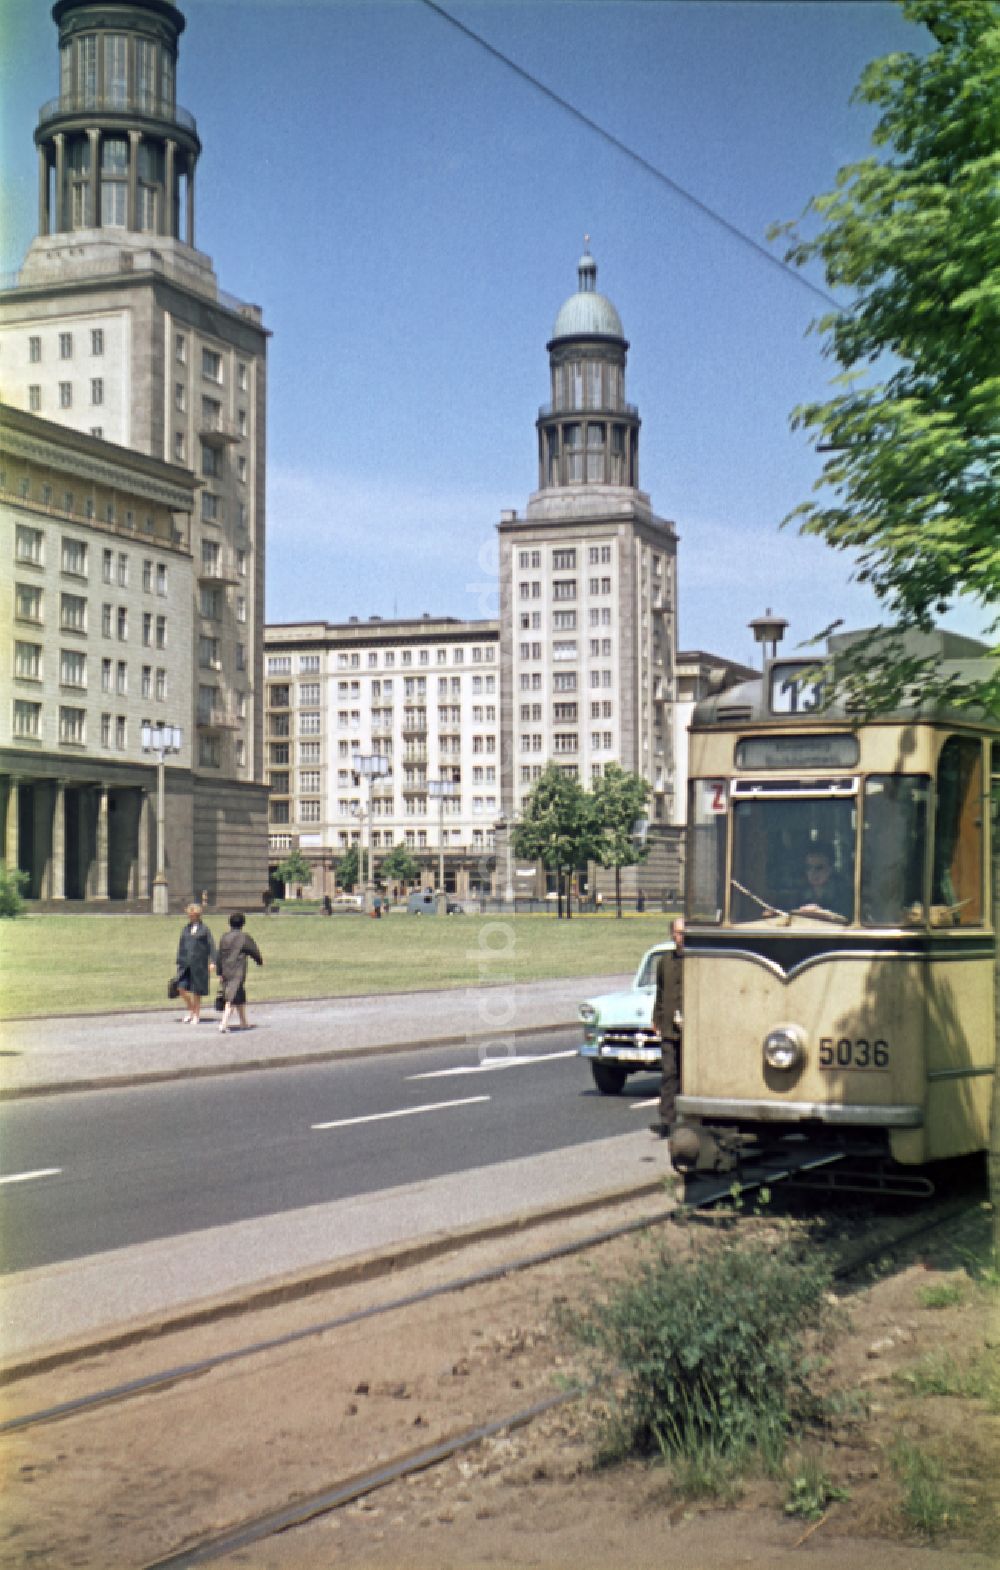 DDR-Bildarchiv: Berlin - Straßenbahnzug - Rekowagen in Berlin auf dem Gebiet der ehemaligen DDR